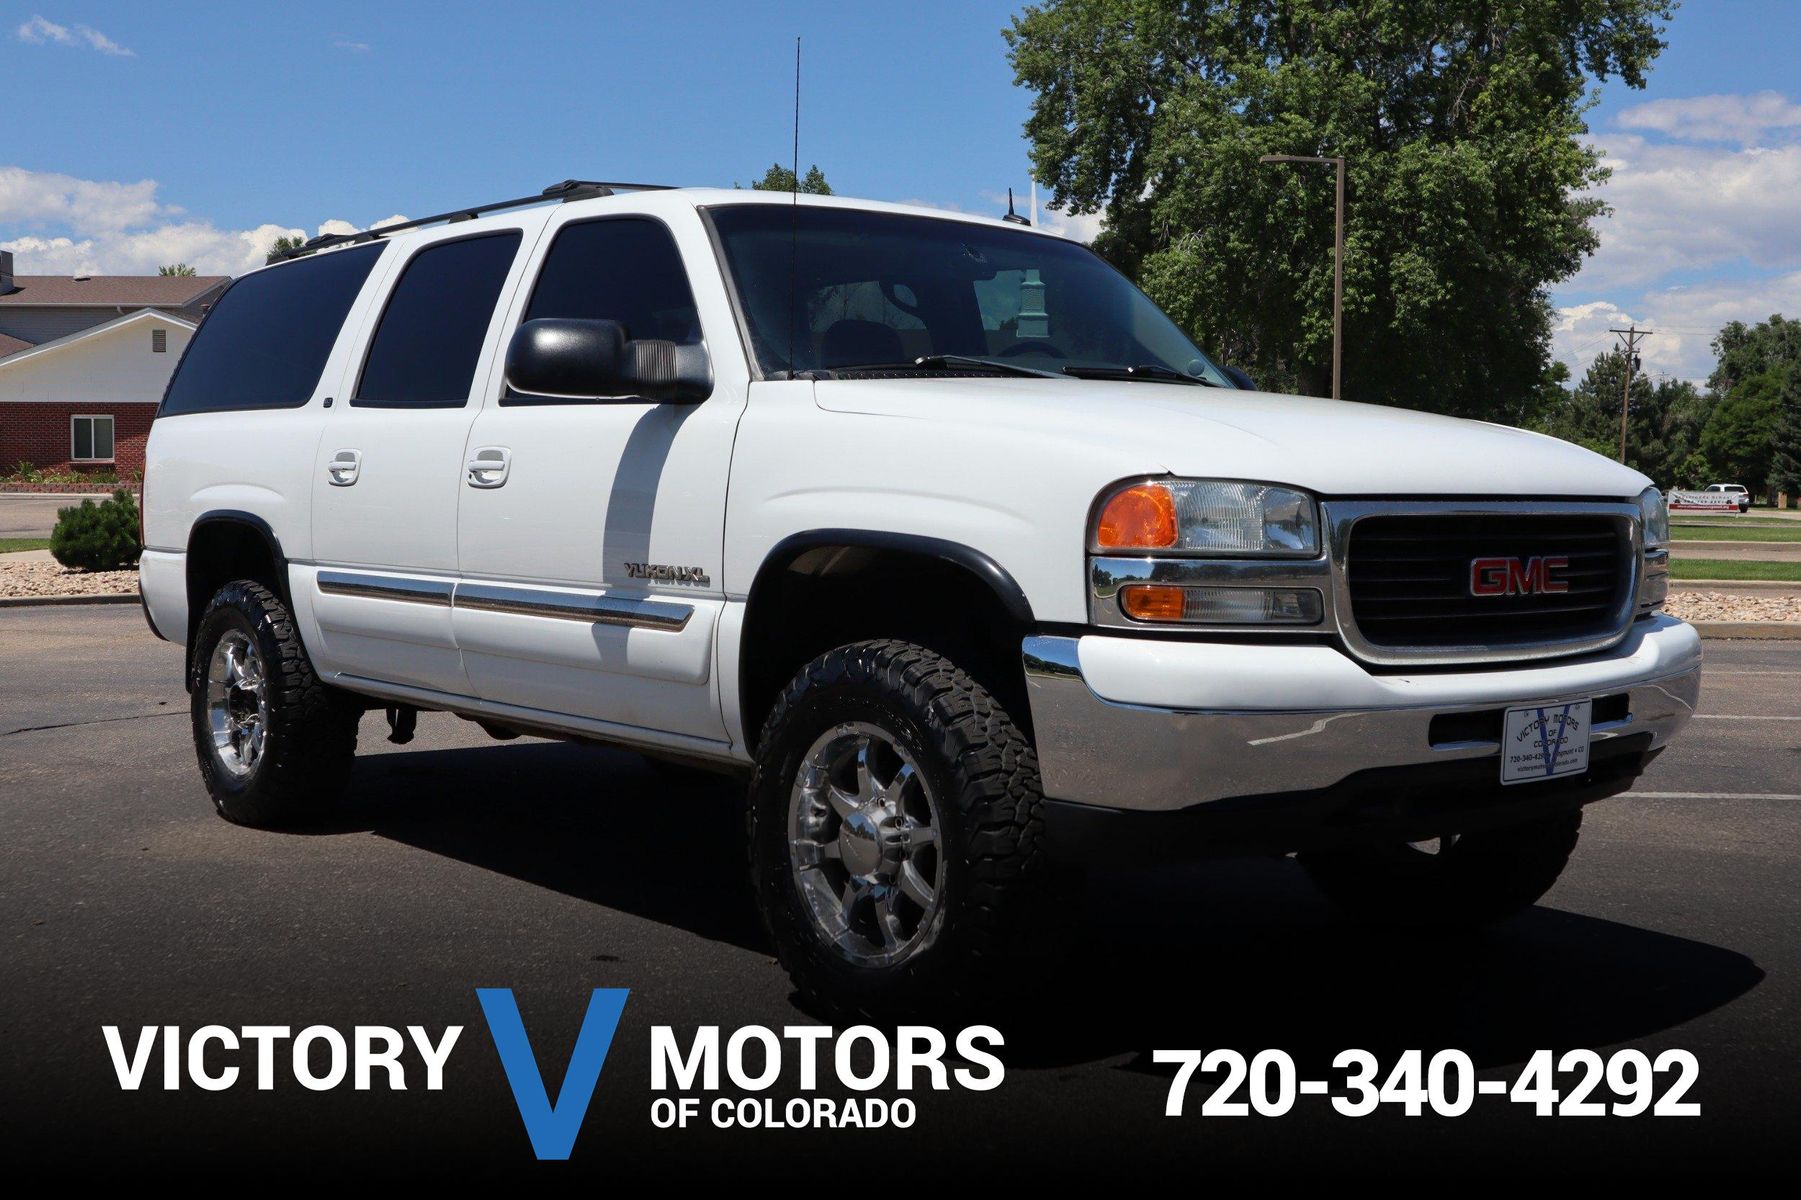 2003 GMC Yukon XL 2500 | Victory Motors of Colorado
